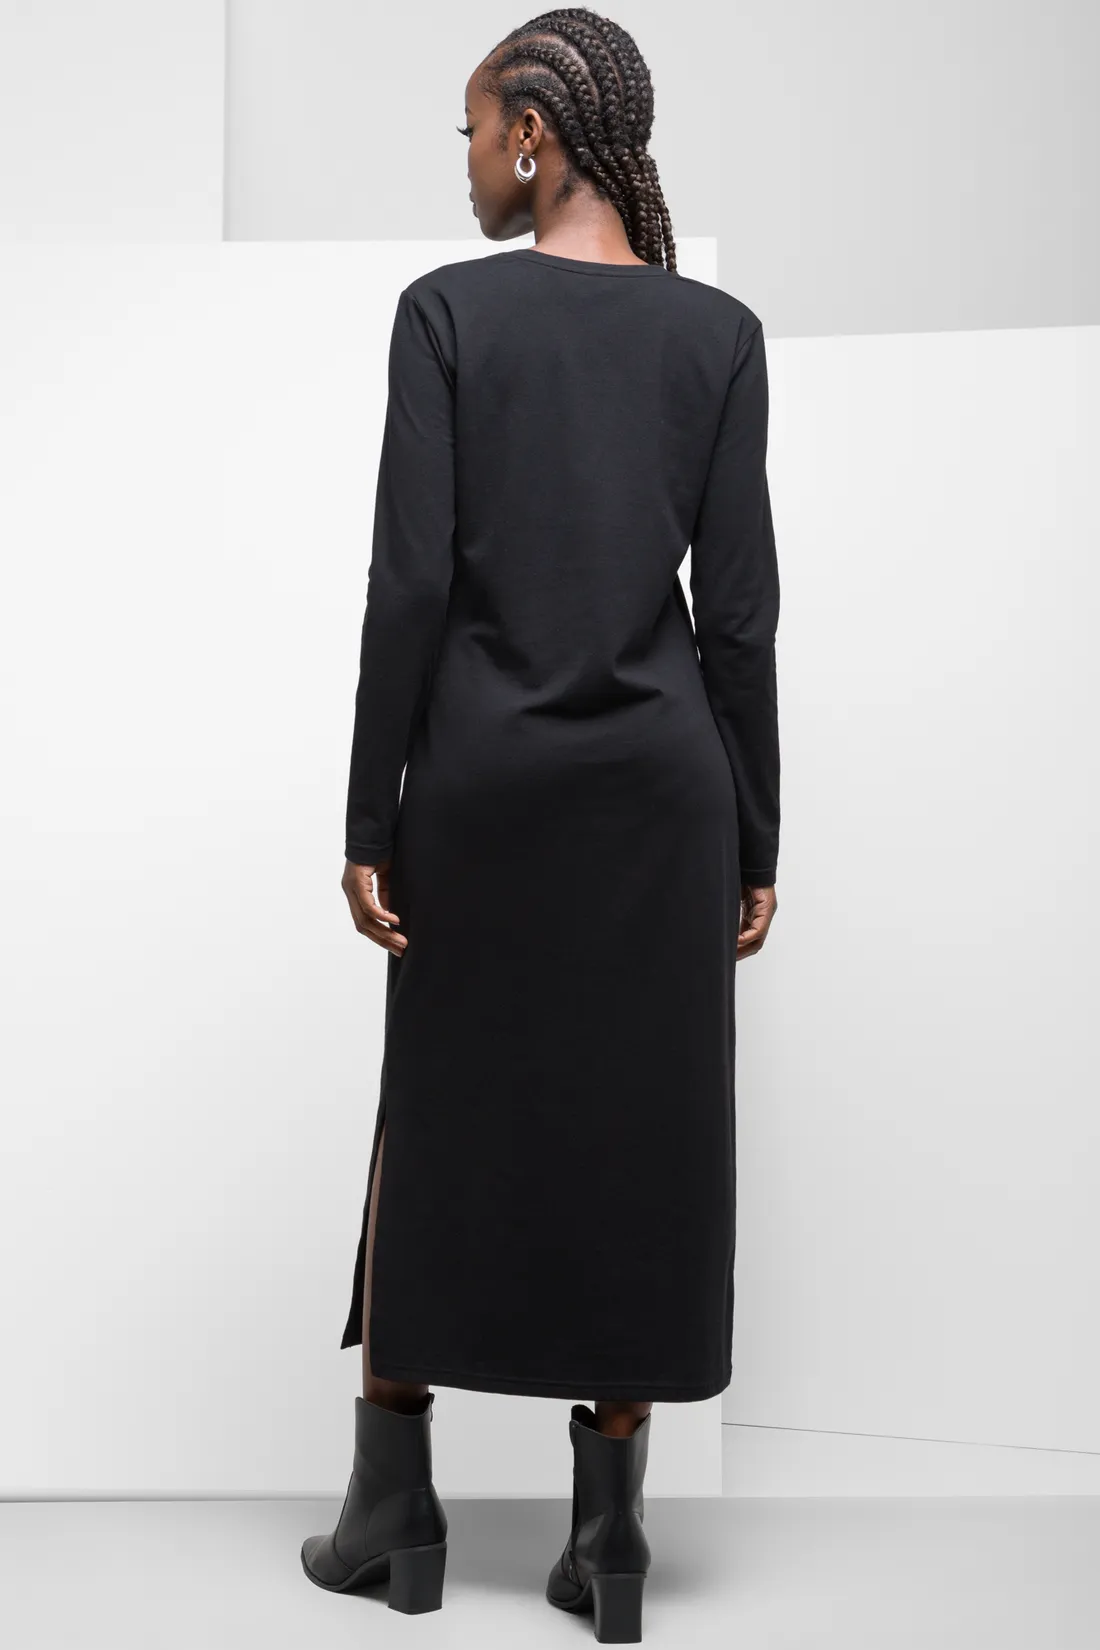 Long sleeve dress black - Women's Dresses | Ackermans